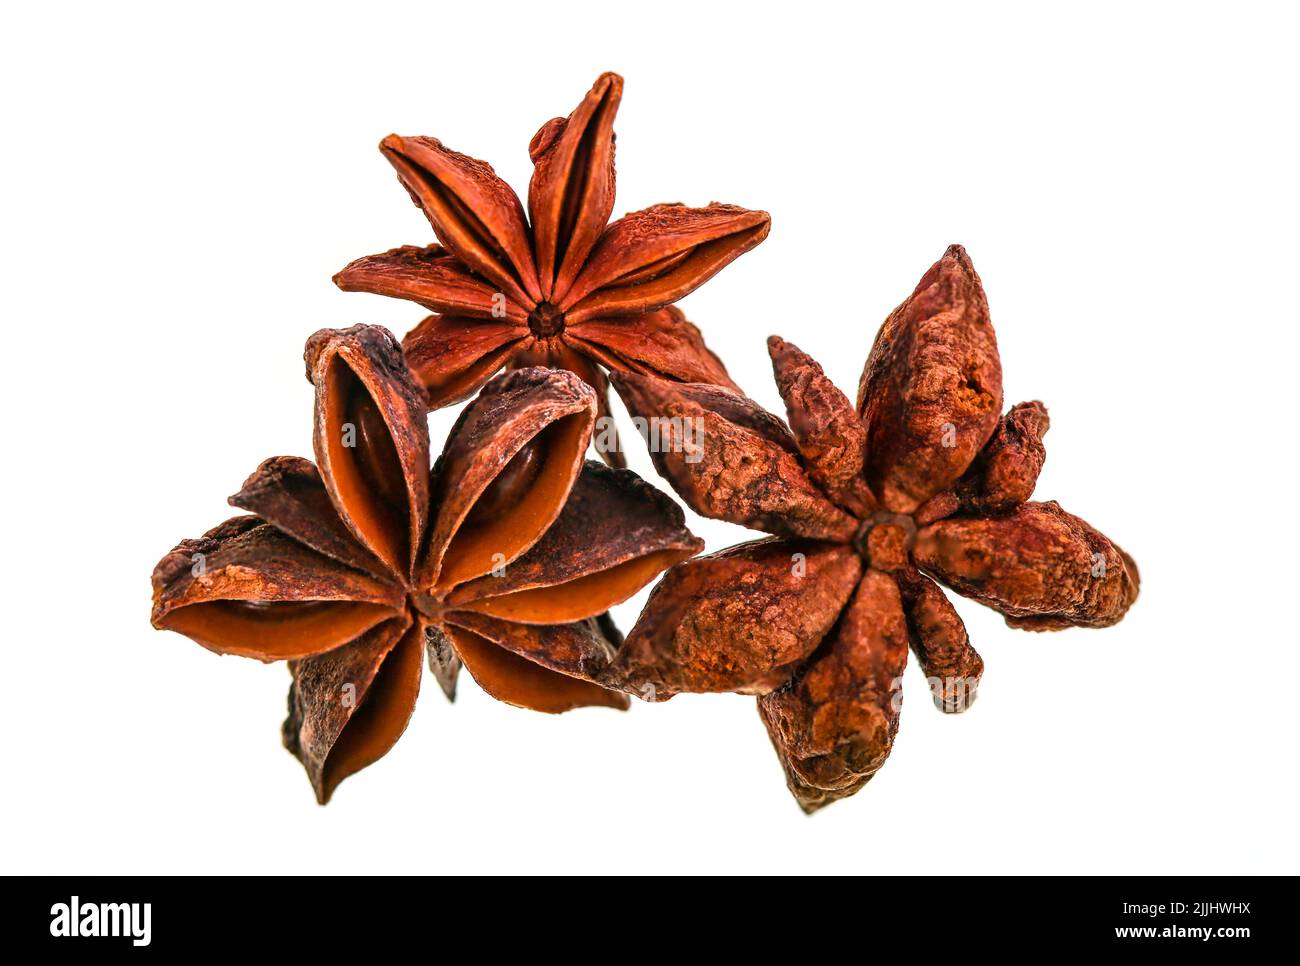 L'anis étoilé est le fruit d'une plante appelée Illicium verum, une plante à feuilles persistantes originaire du Vietnam et du Sud-Ouest de la Chine Banque D'Images